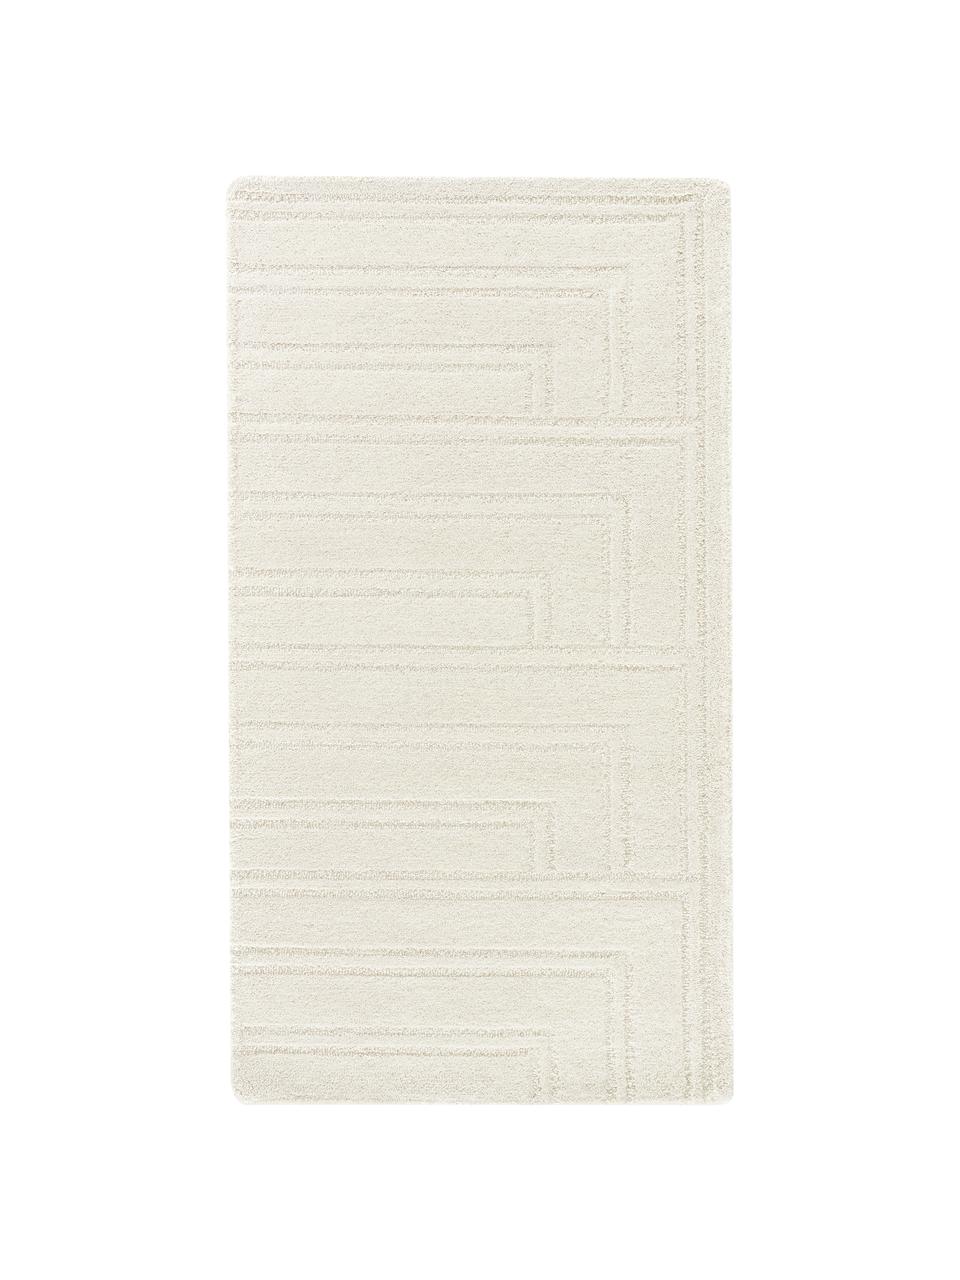 Tapis laine blanc crème tufté main Alan, Blanc crème, larg. 80 x long. 150 cm (taille XS)